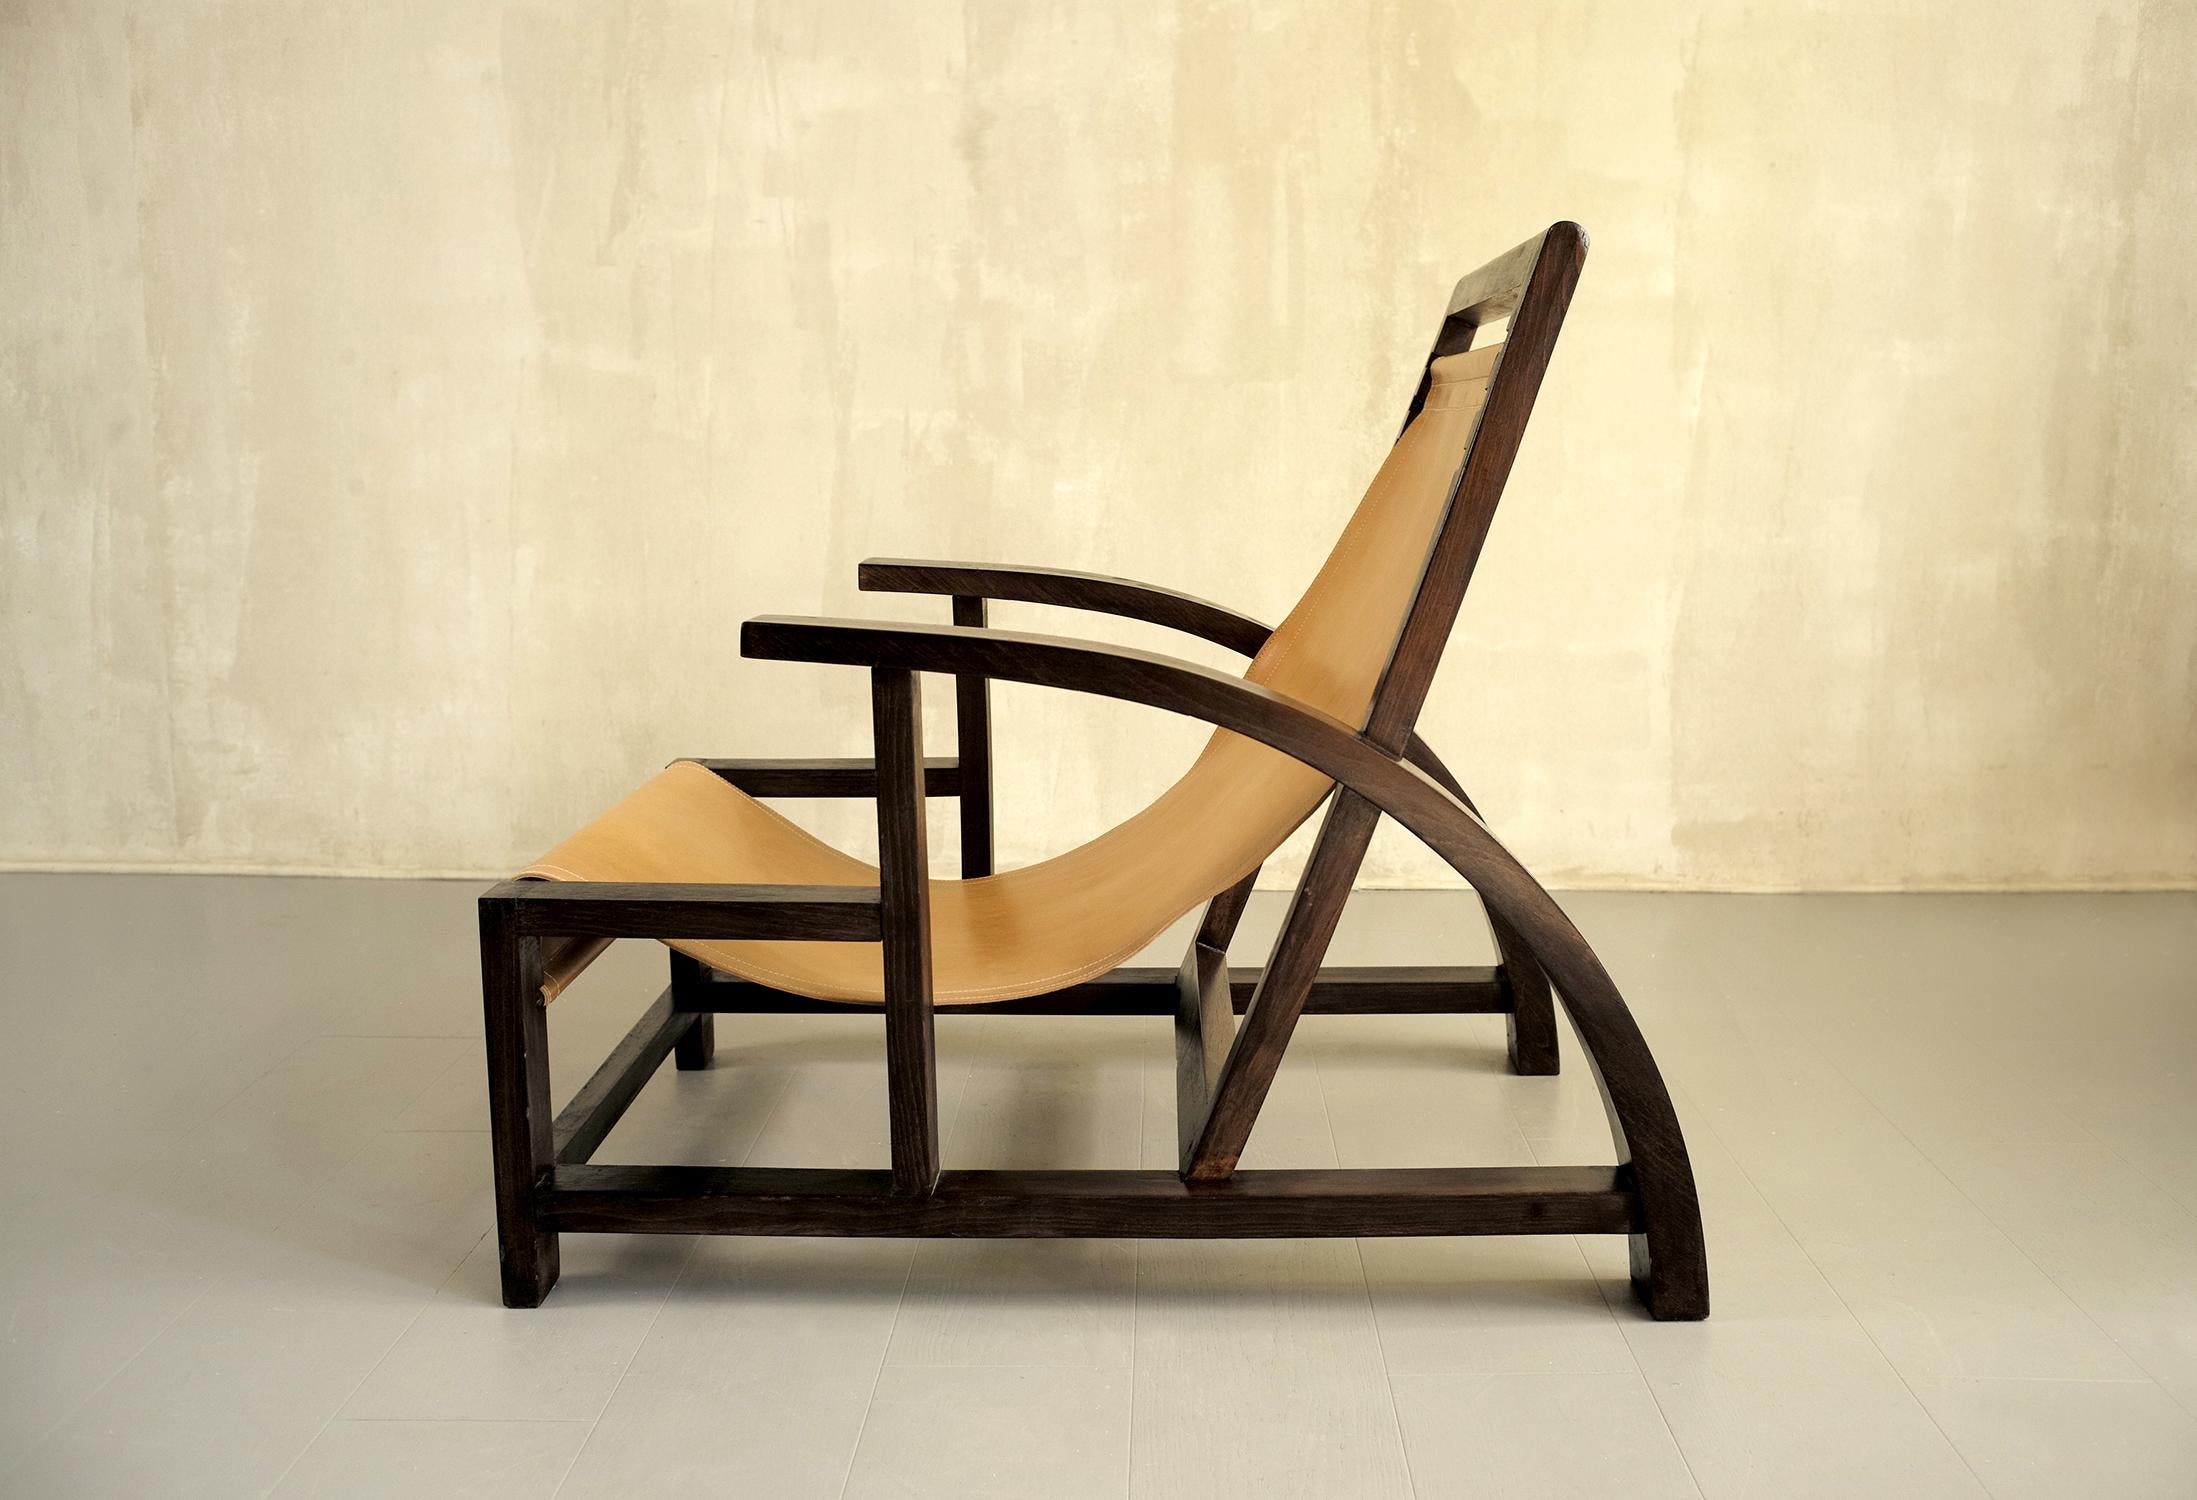 Grand fauteuil en bois noirci et cuir tendu, 1930. Le design moderniste alterne la courbe arquée des accoudoirs, la diagonale du dossier et les plans verticaux et horizontaux de la base. L'assise est constituée d'une bande de cuir naturel surpiquée,